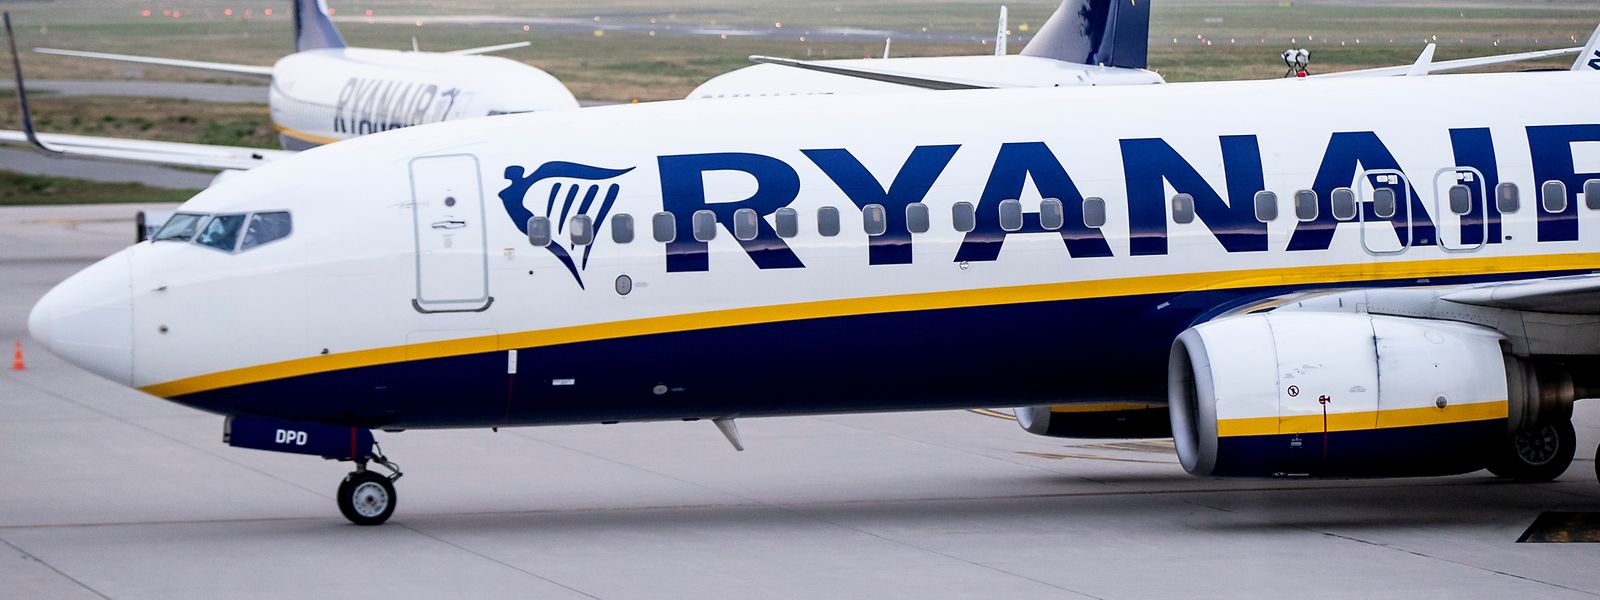 Ryanair kommt um Schadensersatzforderungen nicht herum.